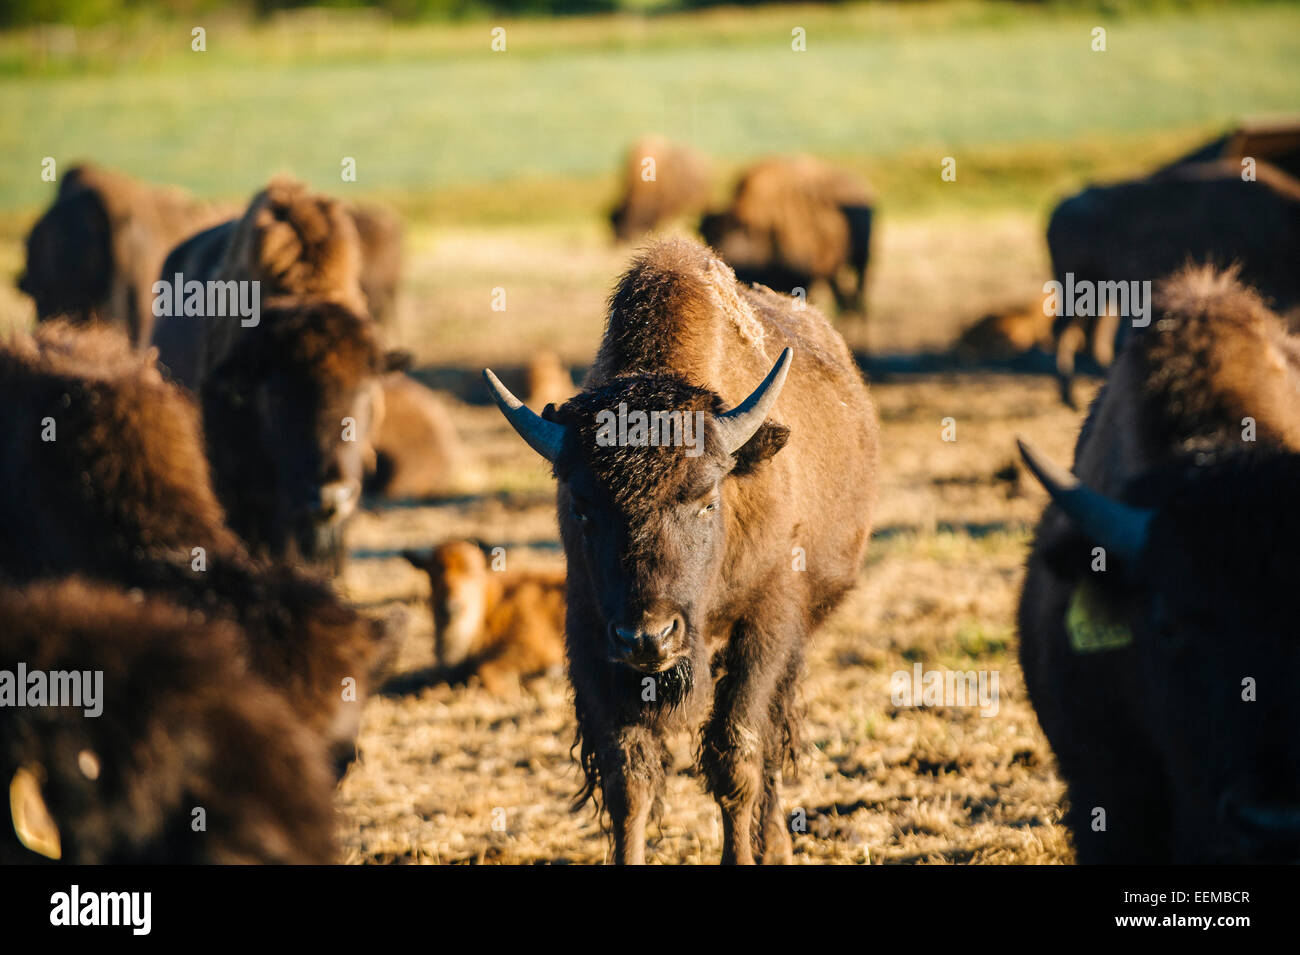 Buffalo herd standing in field Stock Photo